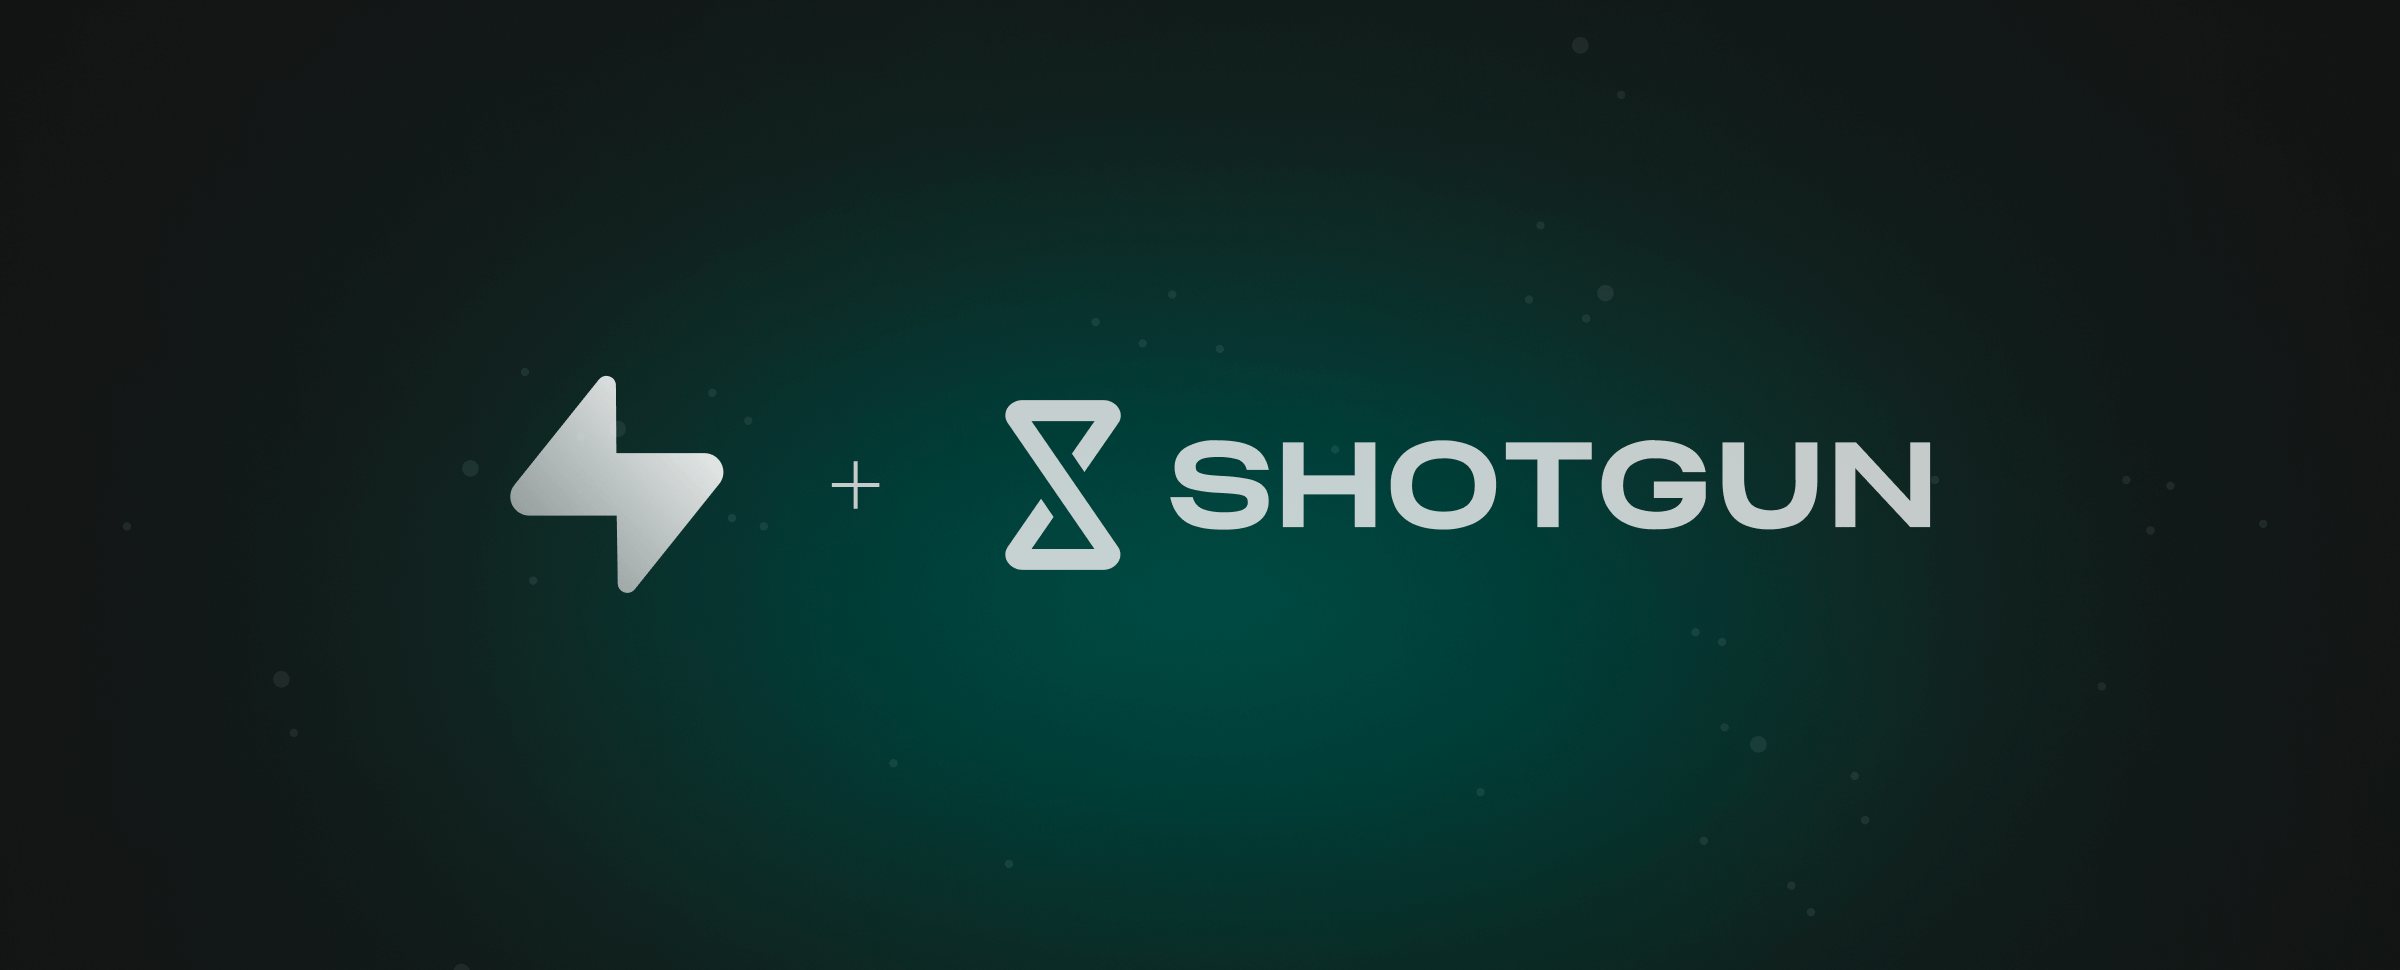 Supabase and Shotgun logos